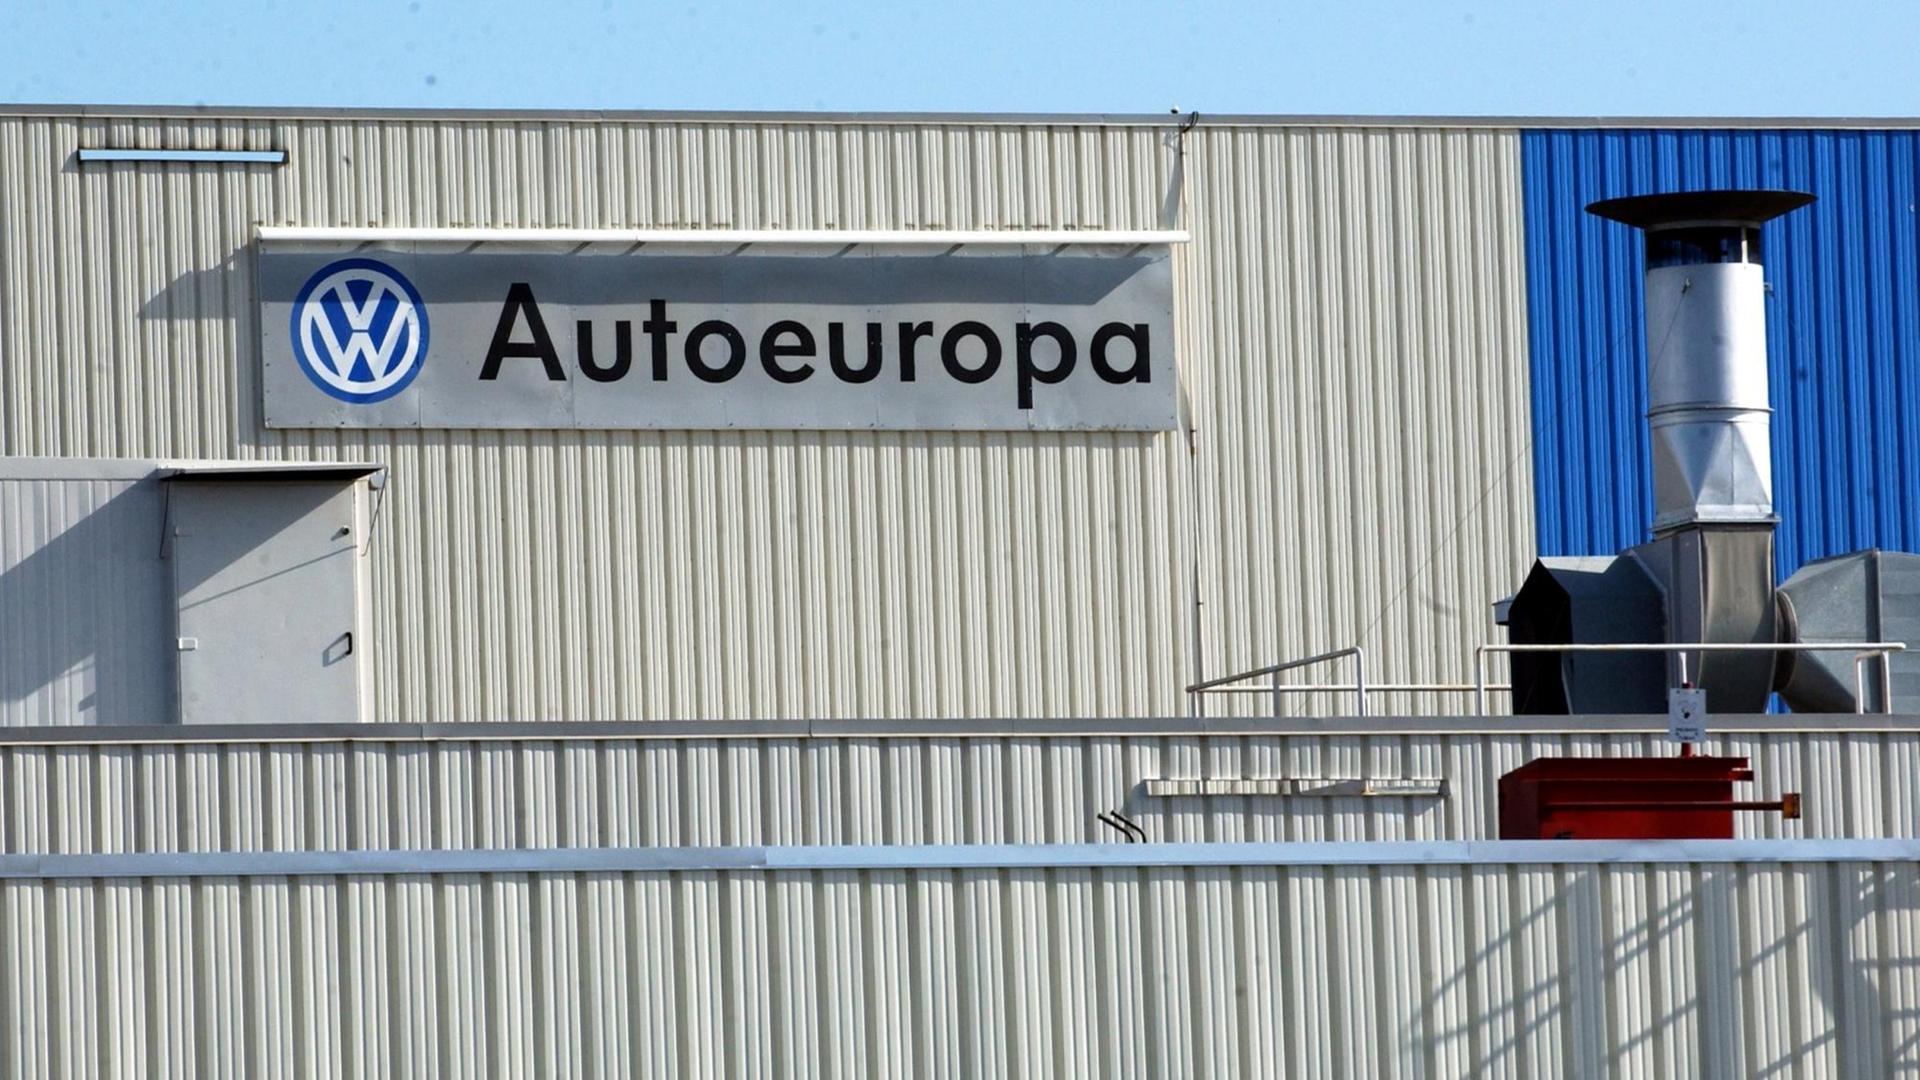 Schild "VW Autoeuropa" an einer grauen Wand eines Fabrikgebäudes.